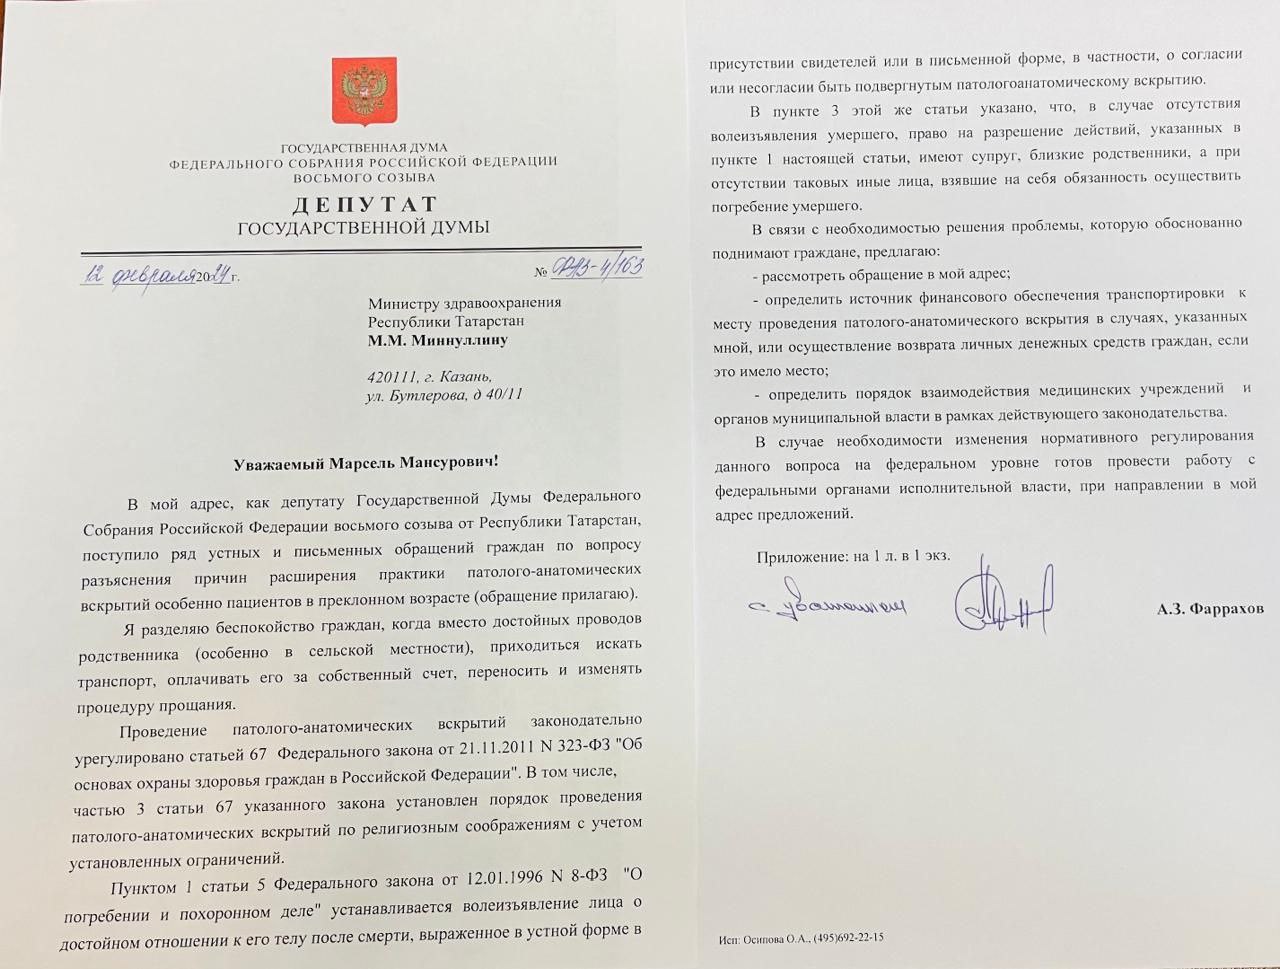 Депутат Госдумы предложил дать право россиянам старше 65 лет при жизни отказаться от вскрытия